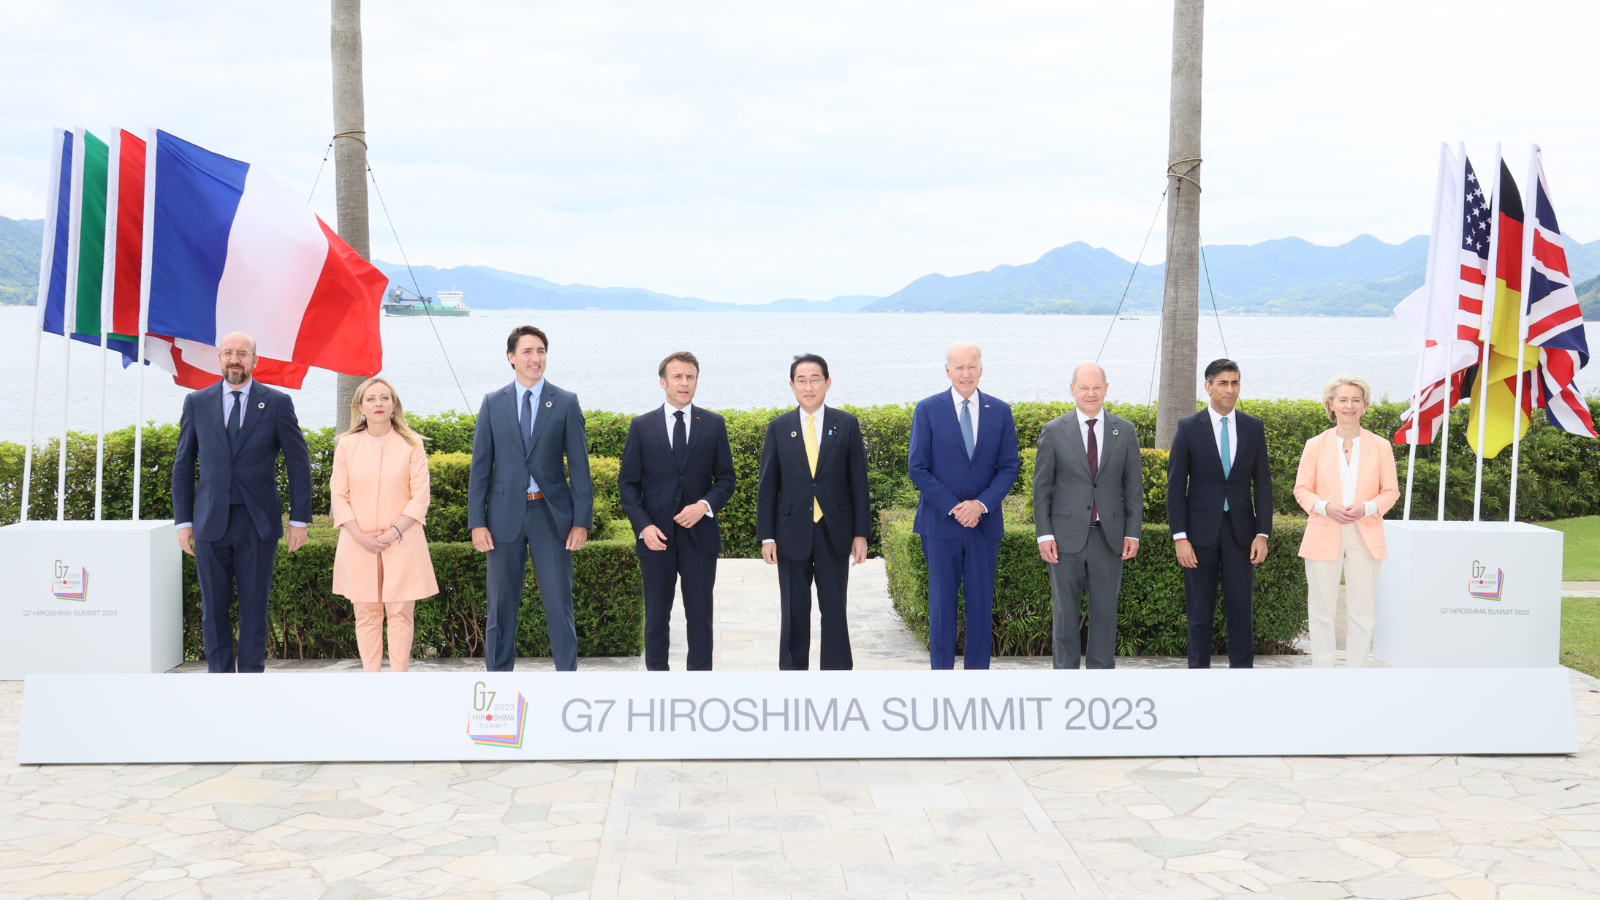 G7 HIROSHIMA SUMMIT